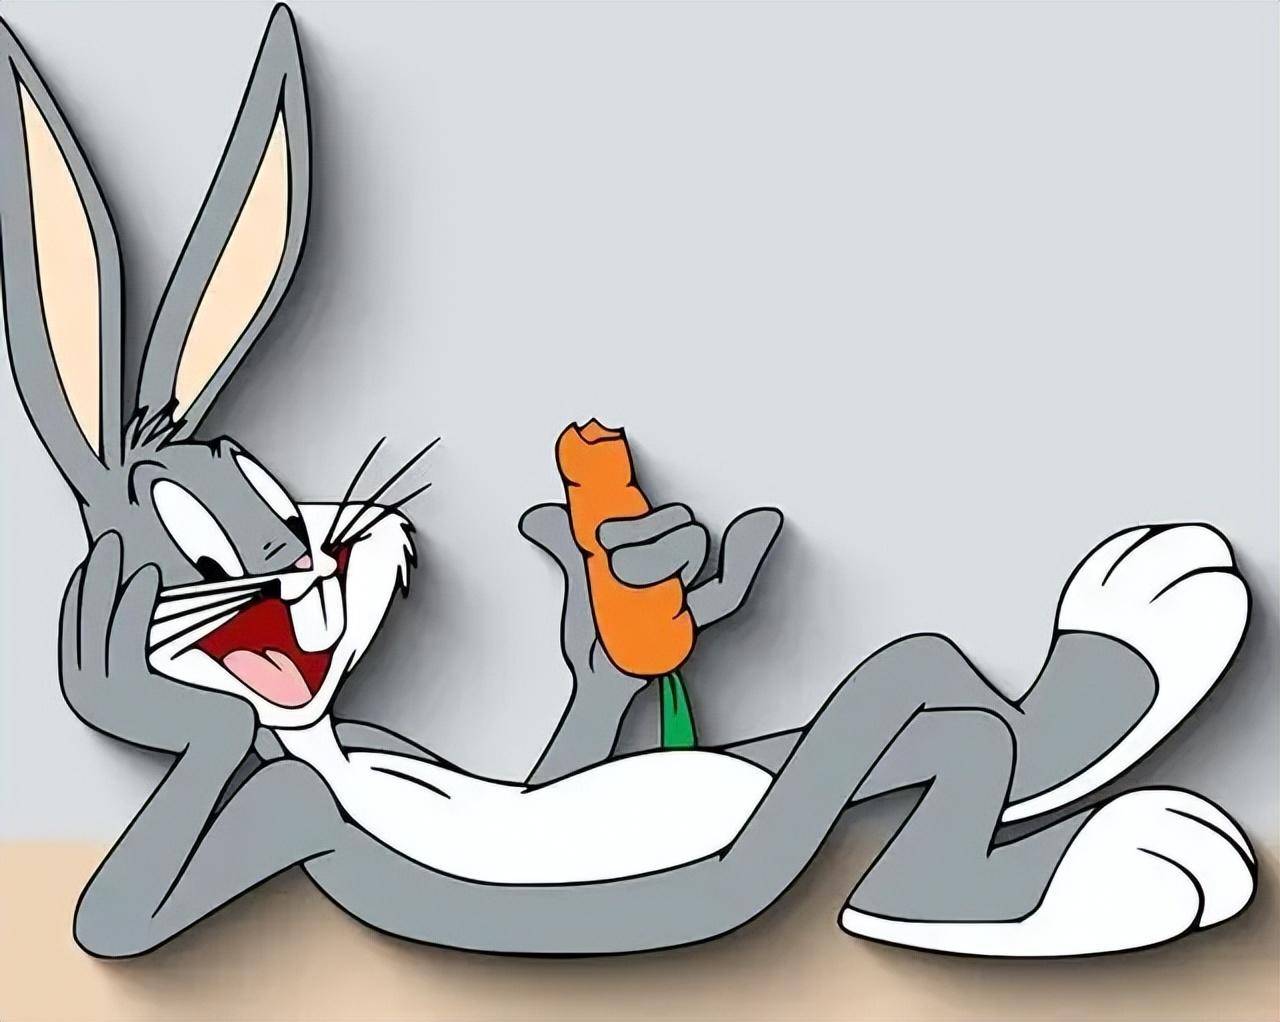 兔年将至,盘点经典卡通兔子形象,最后一个绝对暴露年龄